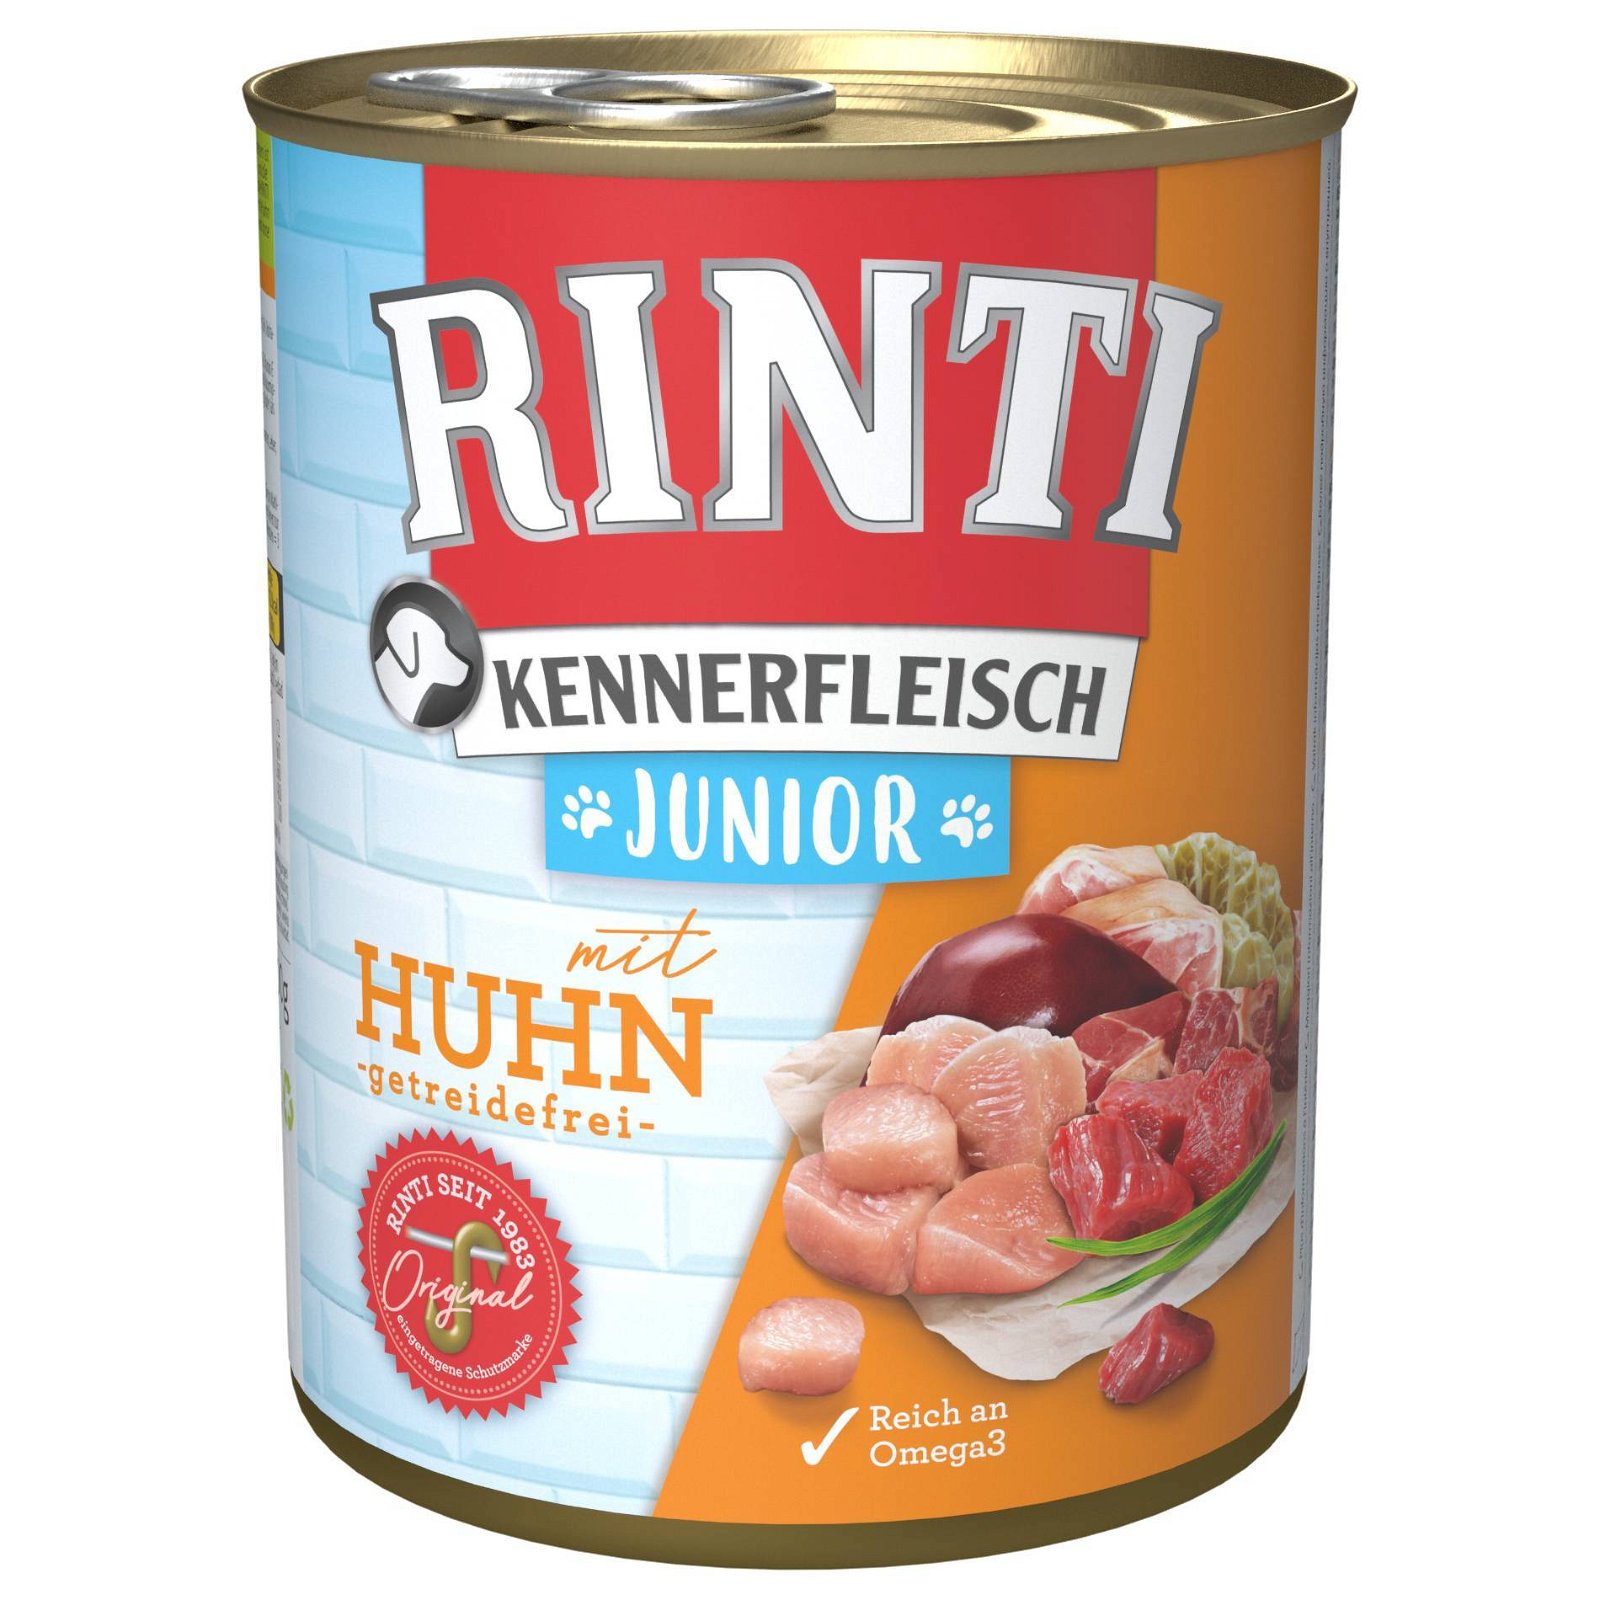 Hundefutter, Finnern Rinti Kennerfleisch Junior, Huhn, 800g